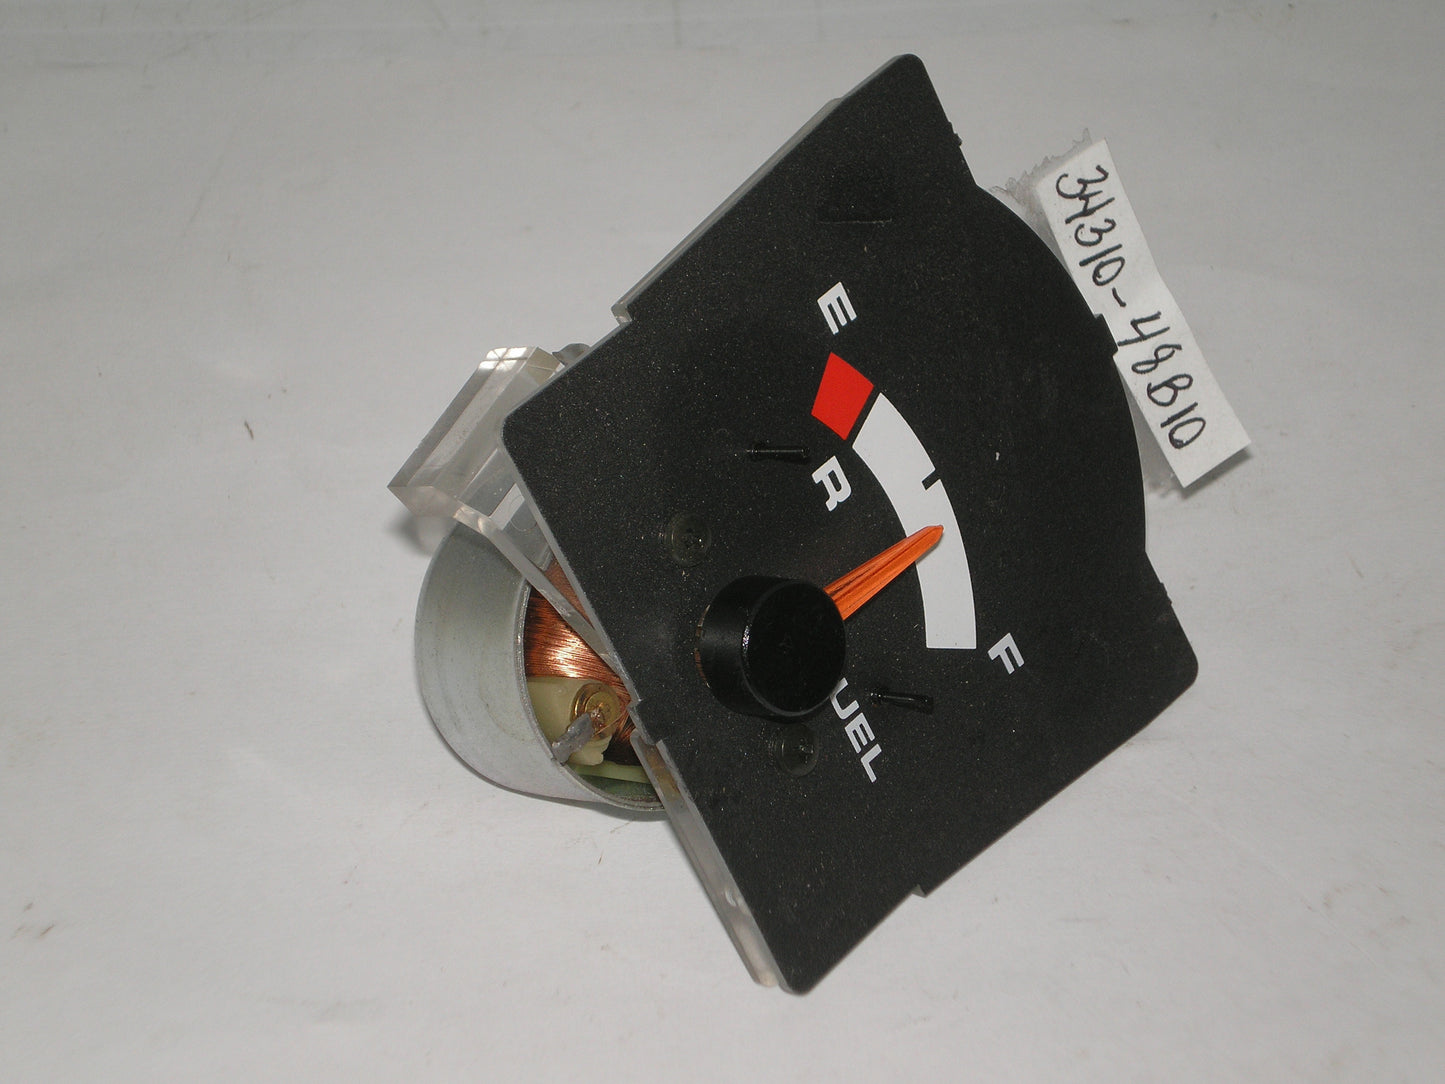 SUZUKI GSX1100 1988-1993 Instrument Fuel Meter 34310-48B10